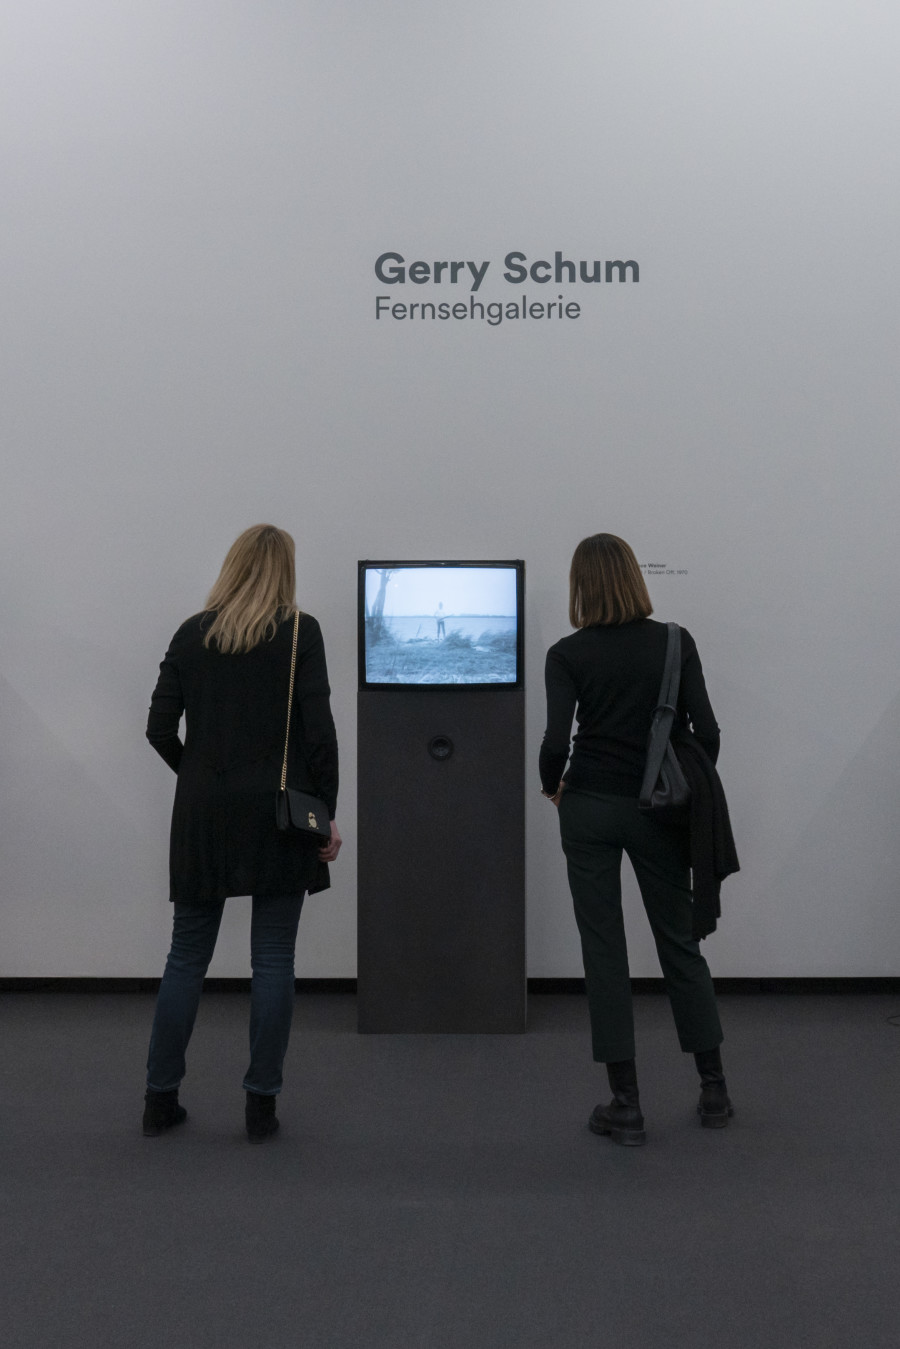 Installation view, Gerry Schum, Fernsehgalerie, Kunst Museum Winterthur, 2022.